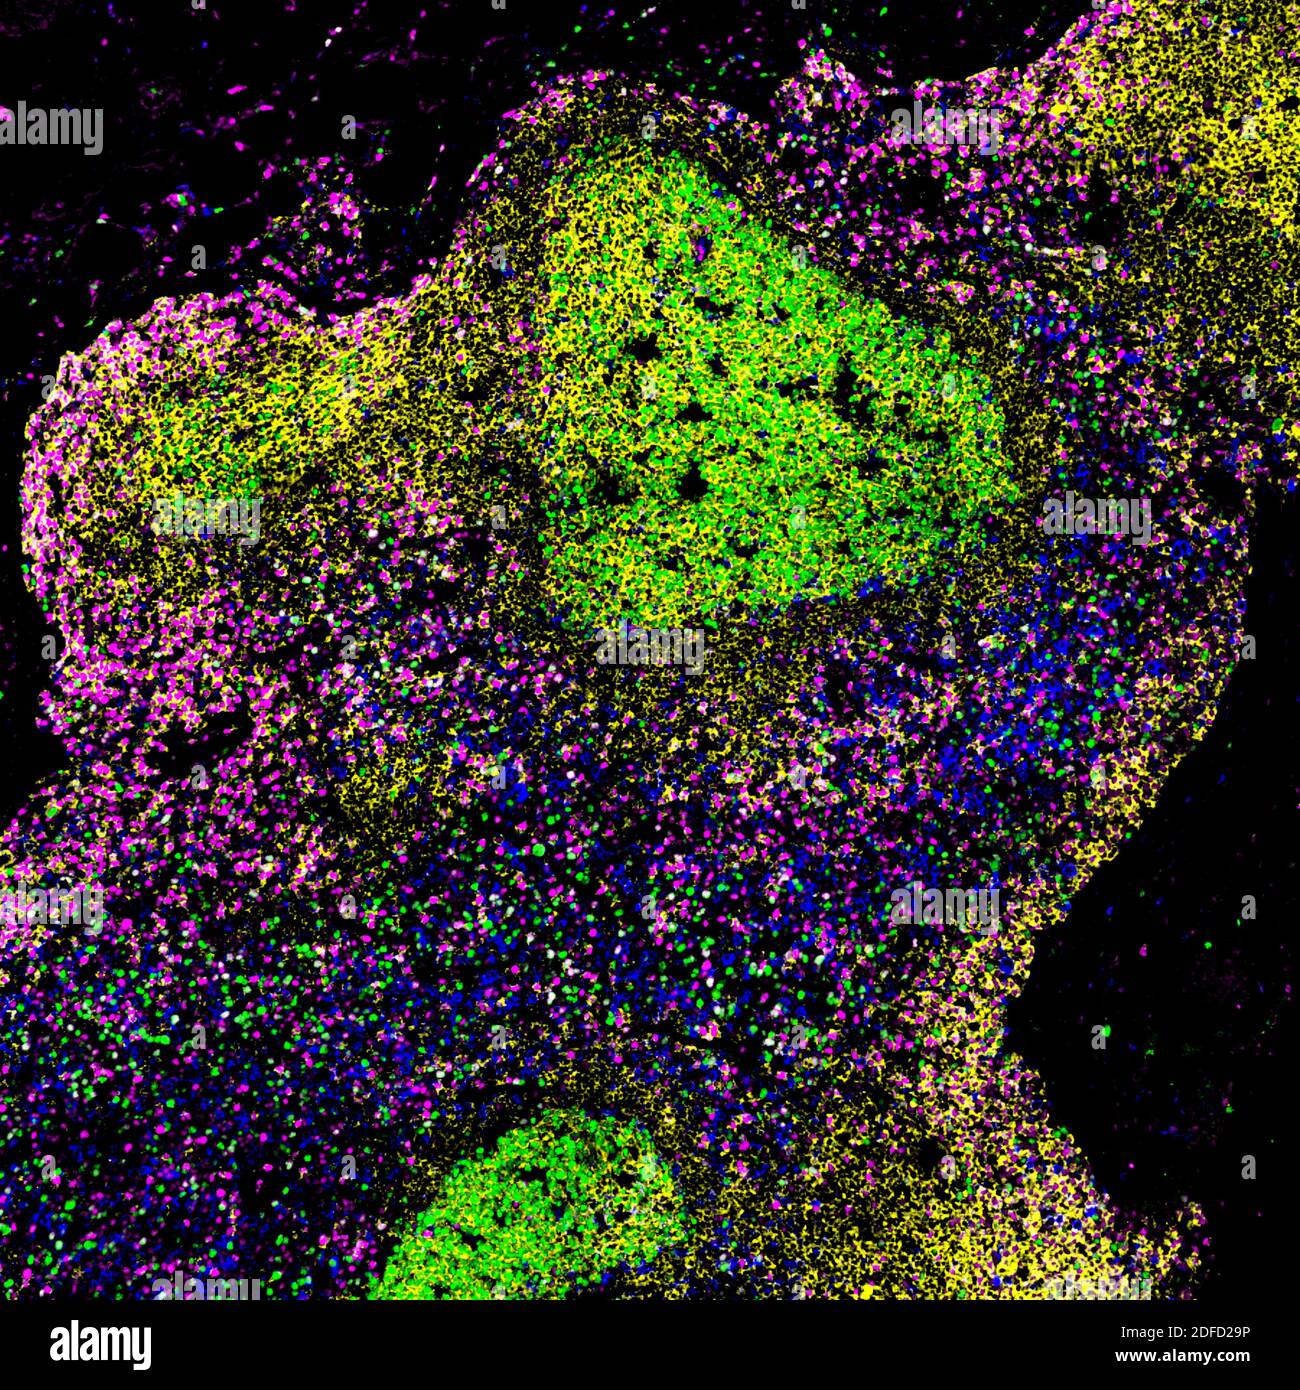 Ein mikroskopisches Bild eines biopsieten Lymphknotens einer Person mit unbehandeltem HIV, das große Keimzentren mit abnorm proliferierenden B-Zellen zeigt Stockfoto